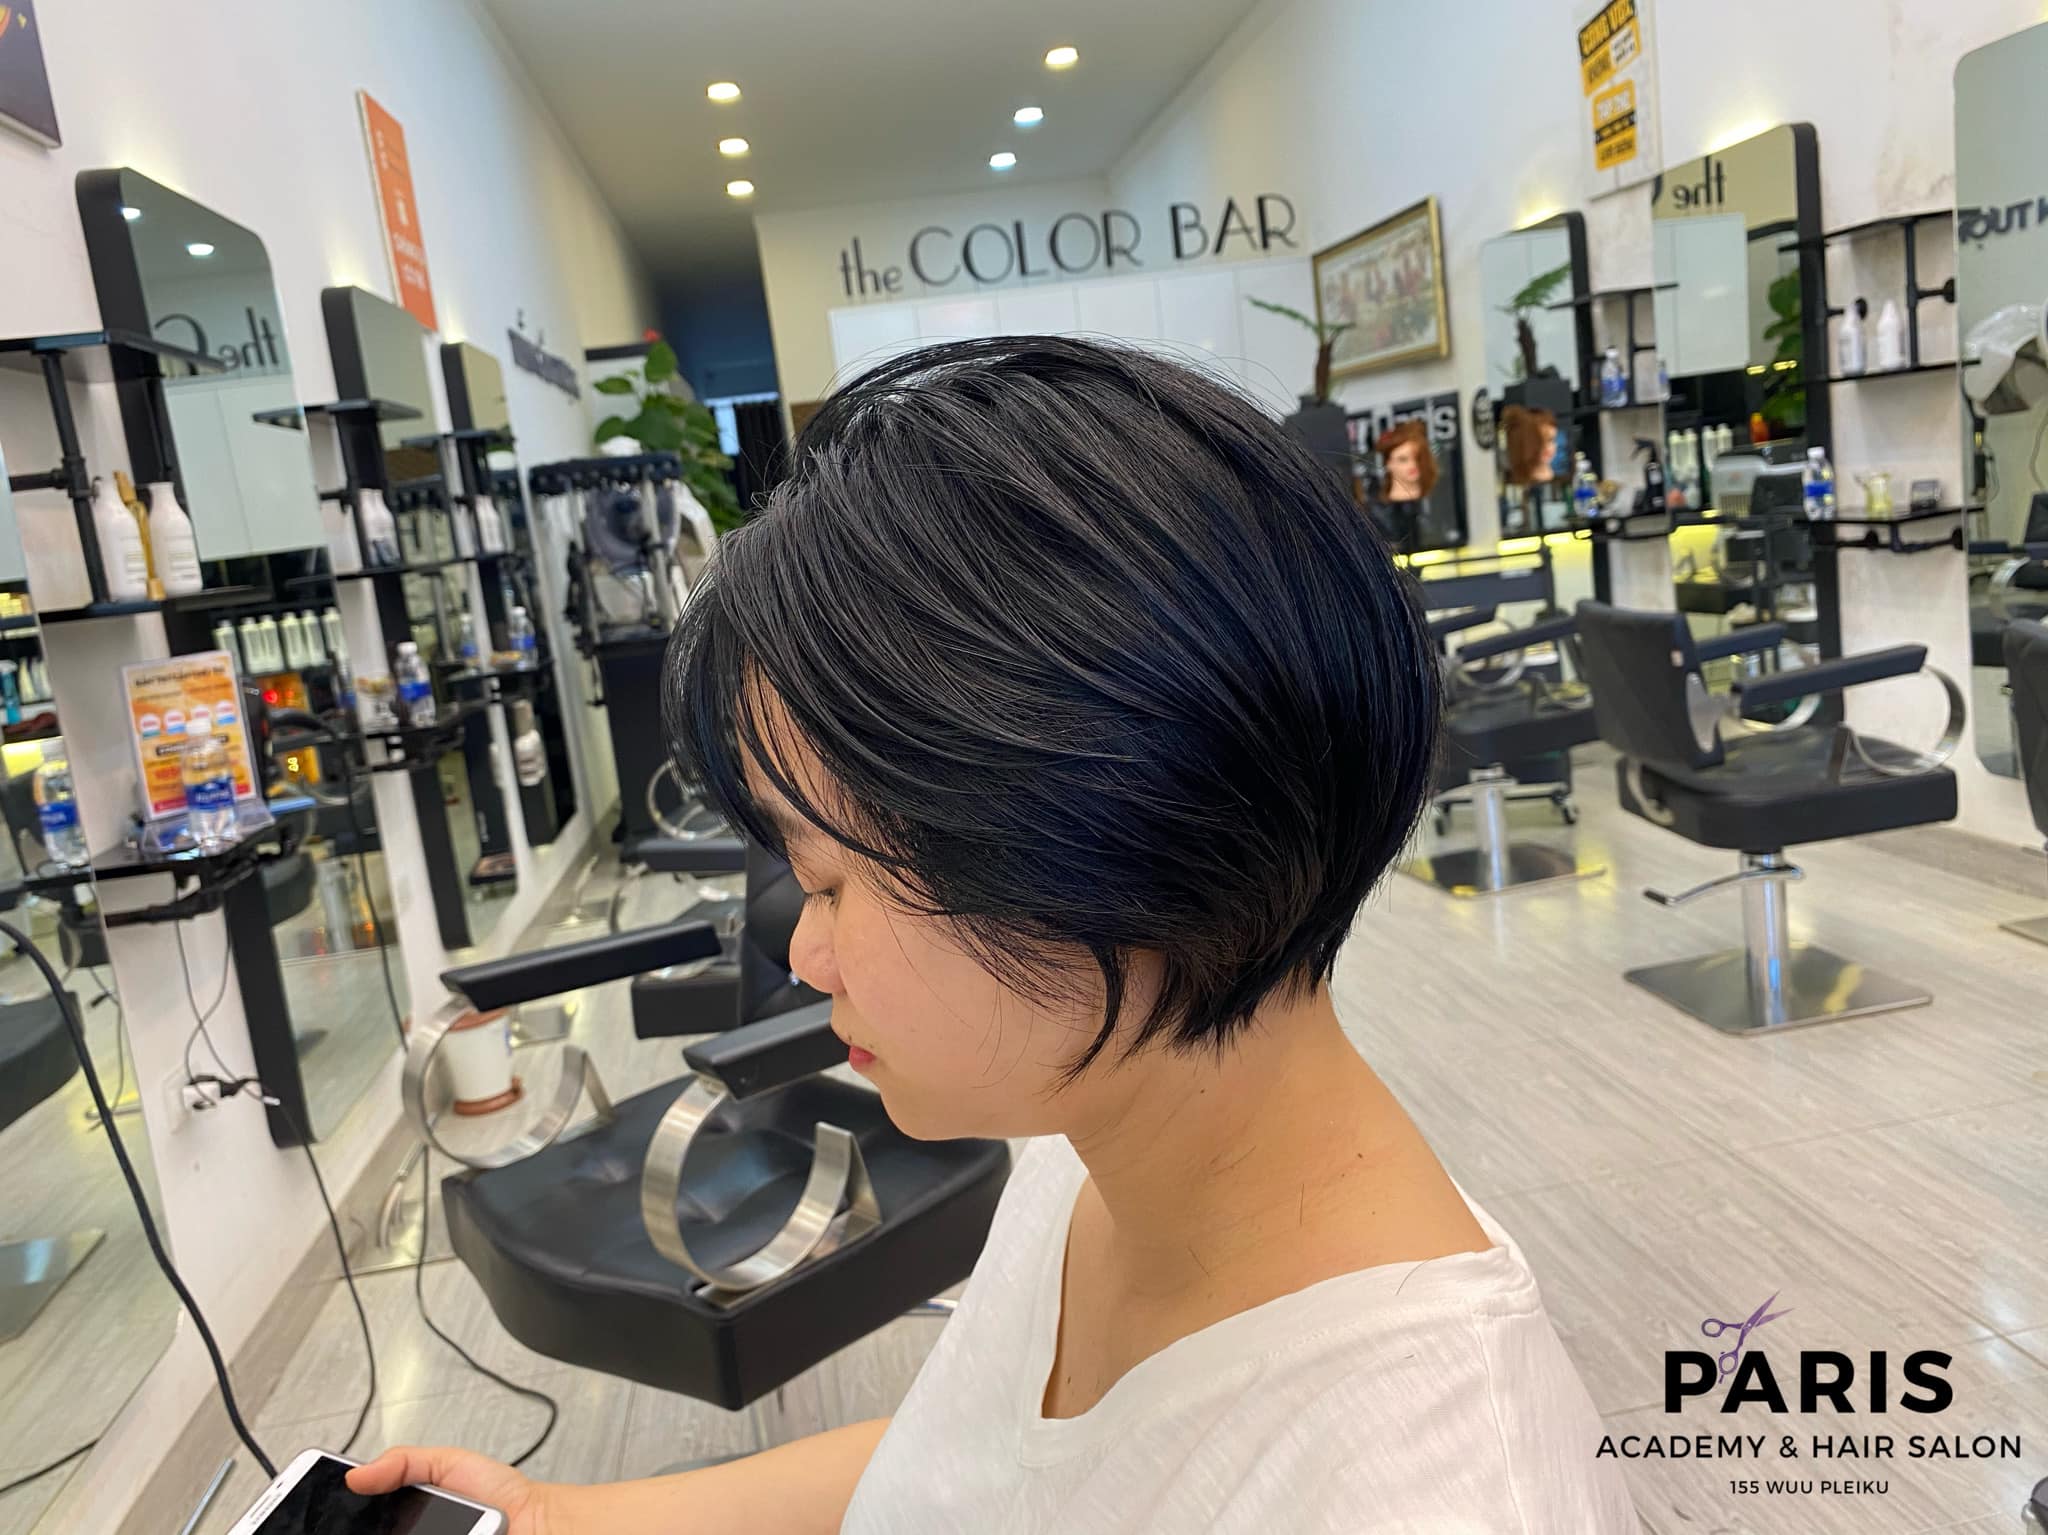 Salon tóc nổi tiếng Gia Lai: Bạn muốn có một kiểu tóc đẳng cấp như những ngôi sao? Hãy đến ngay Salon tóc nổi tiếng Gia Lai, nơi đã trở thành thương hiệu đáng tin cậy của các bạn trẻ hiện nay. Được phục vụ bởi những chuyên gia tóc giỏi nhất, bạn sẽ hài lòng với kết quả của mình.